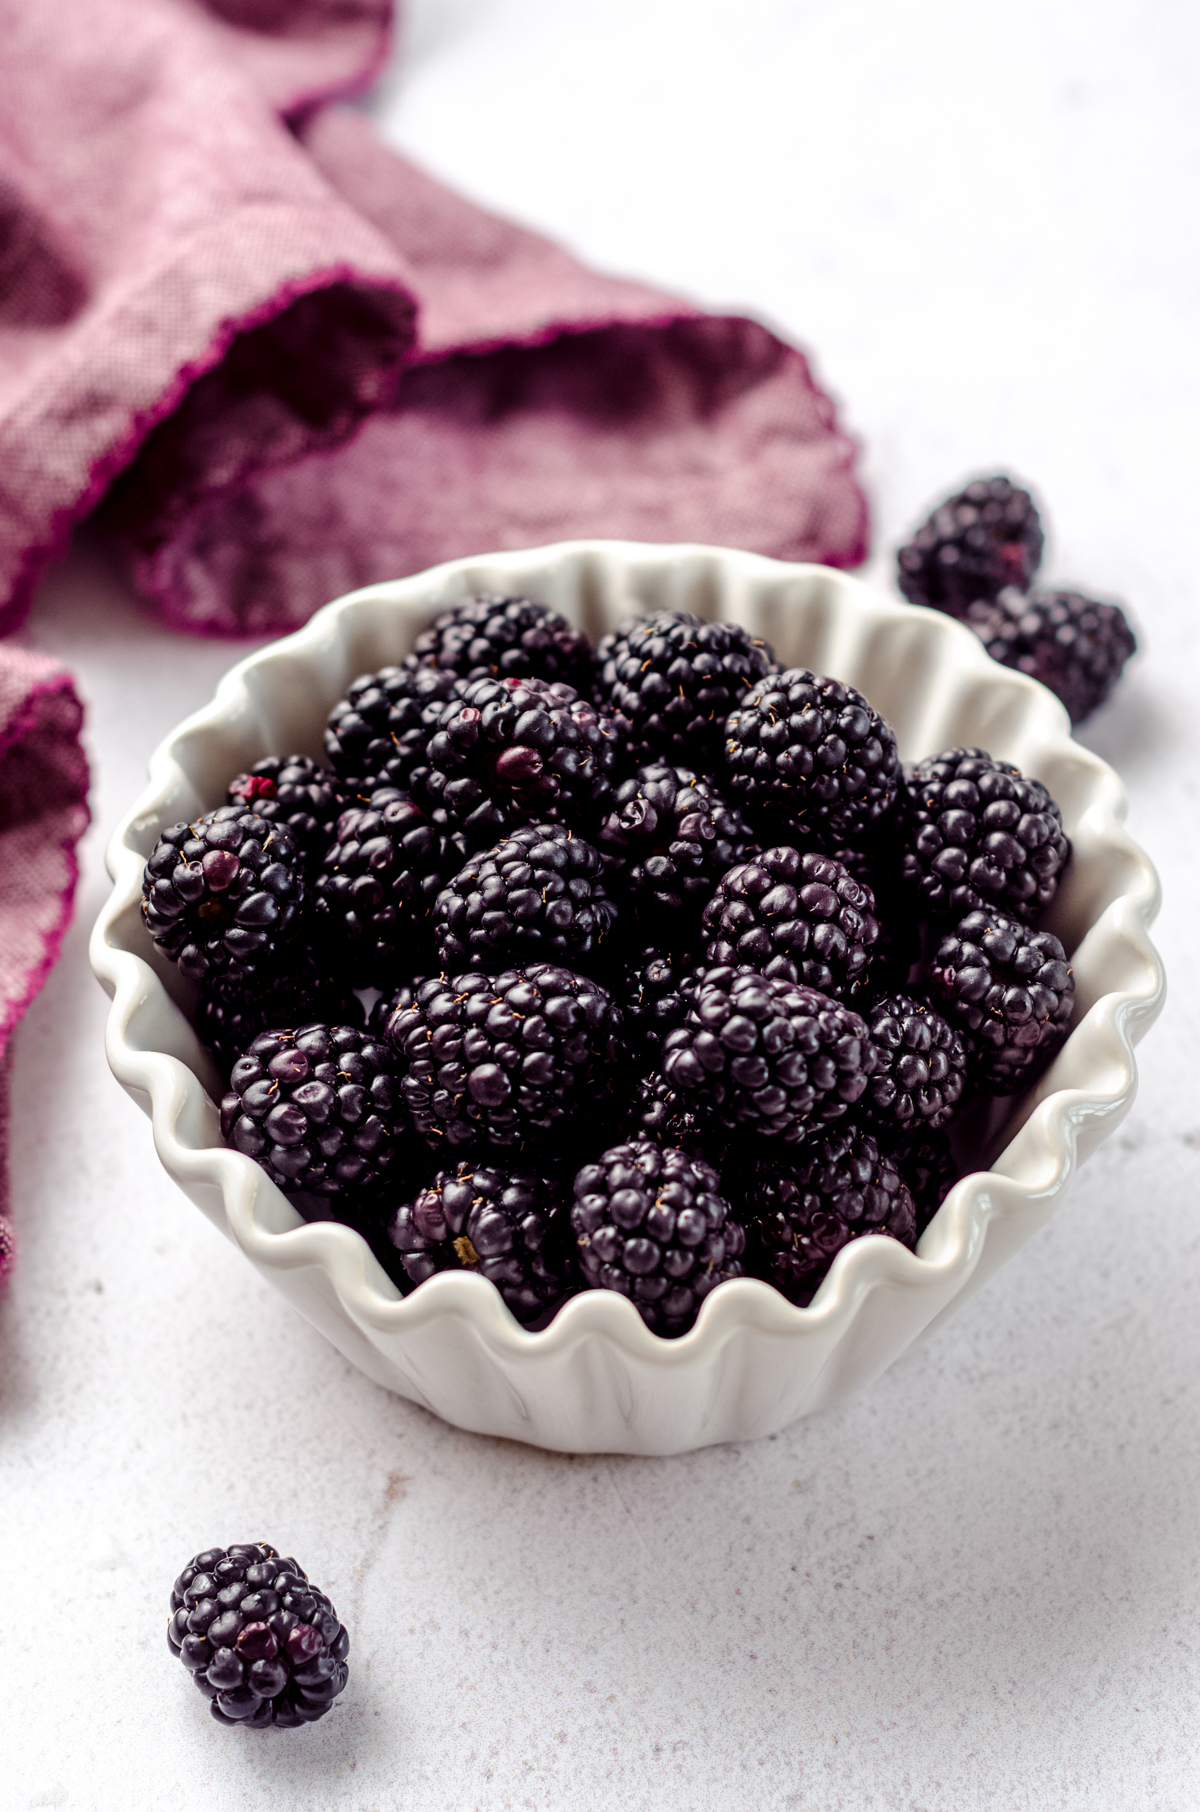 Fresh blackberries in a bowl.